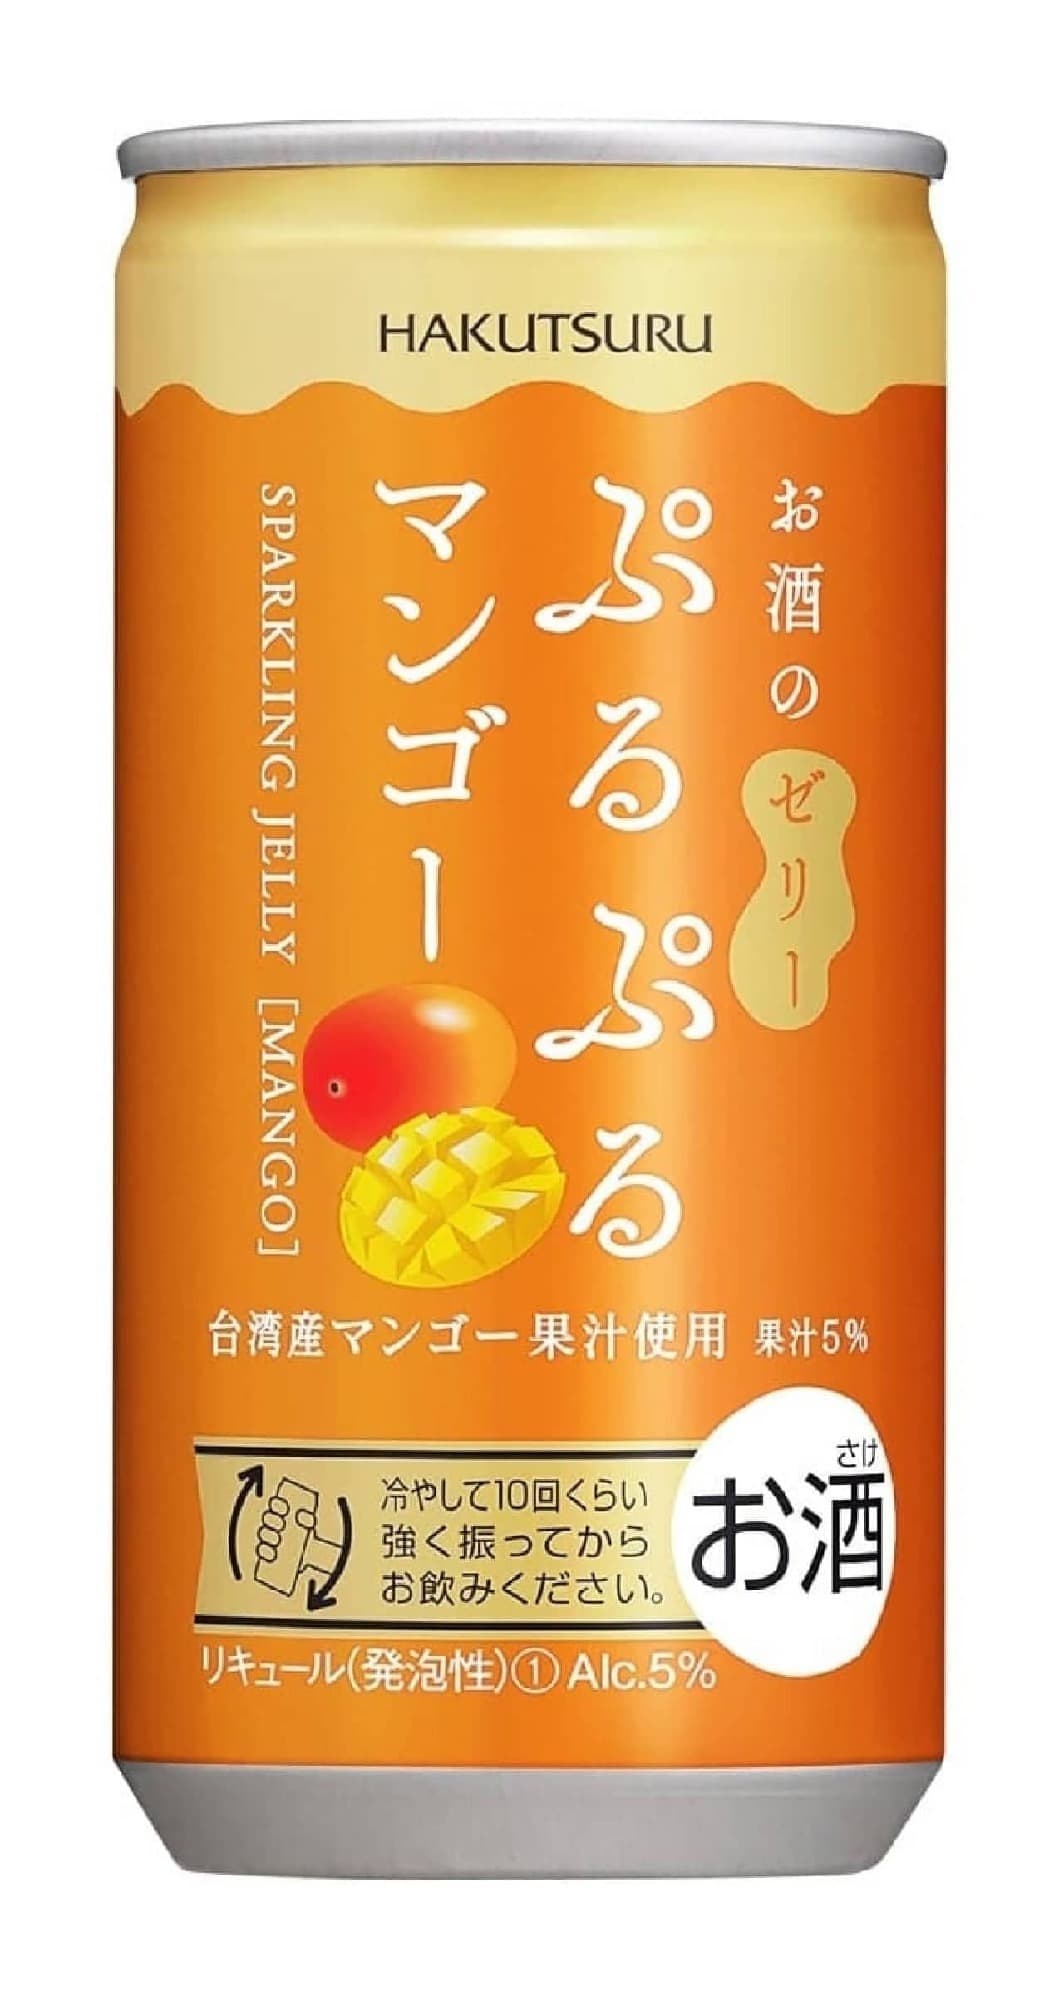 Lawson "Hakutsuru Puru-Puru Mango